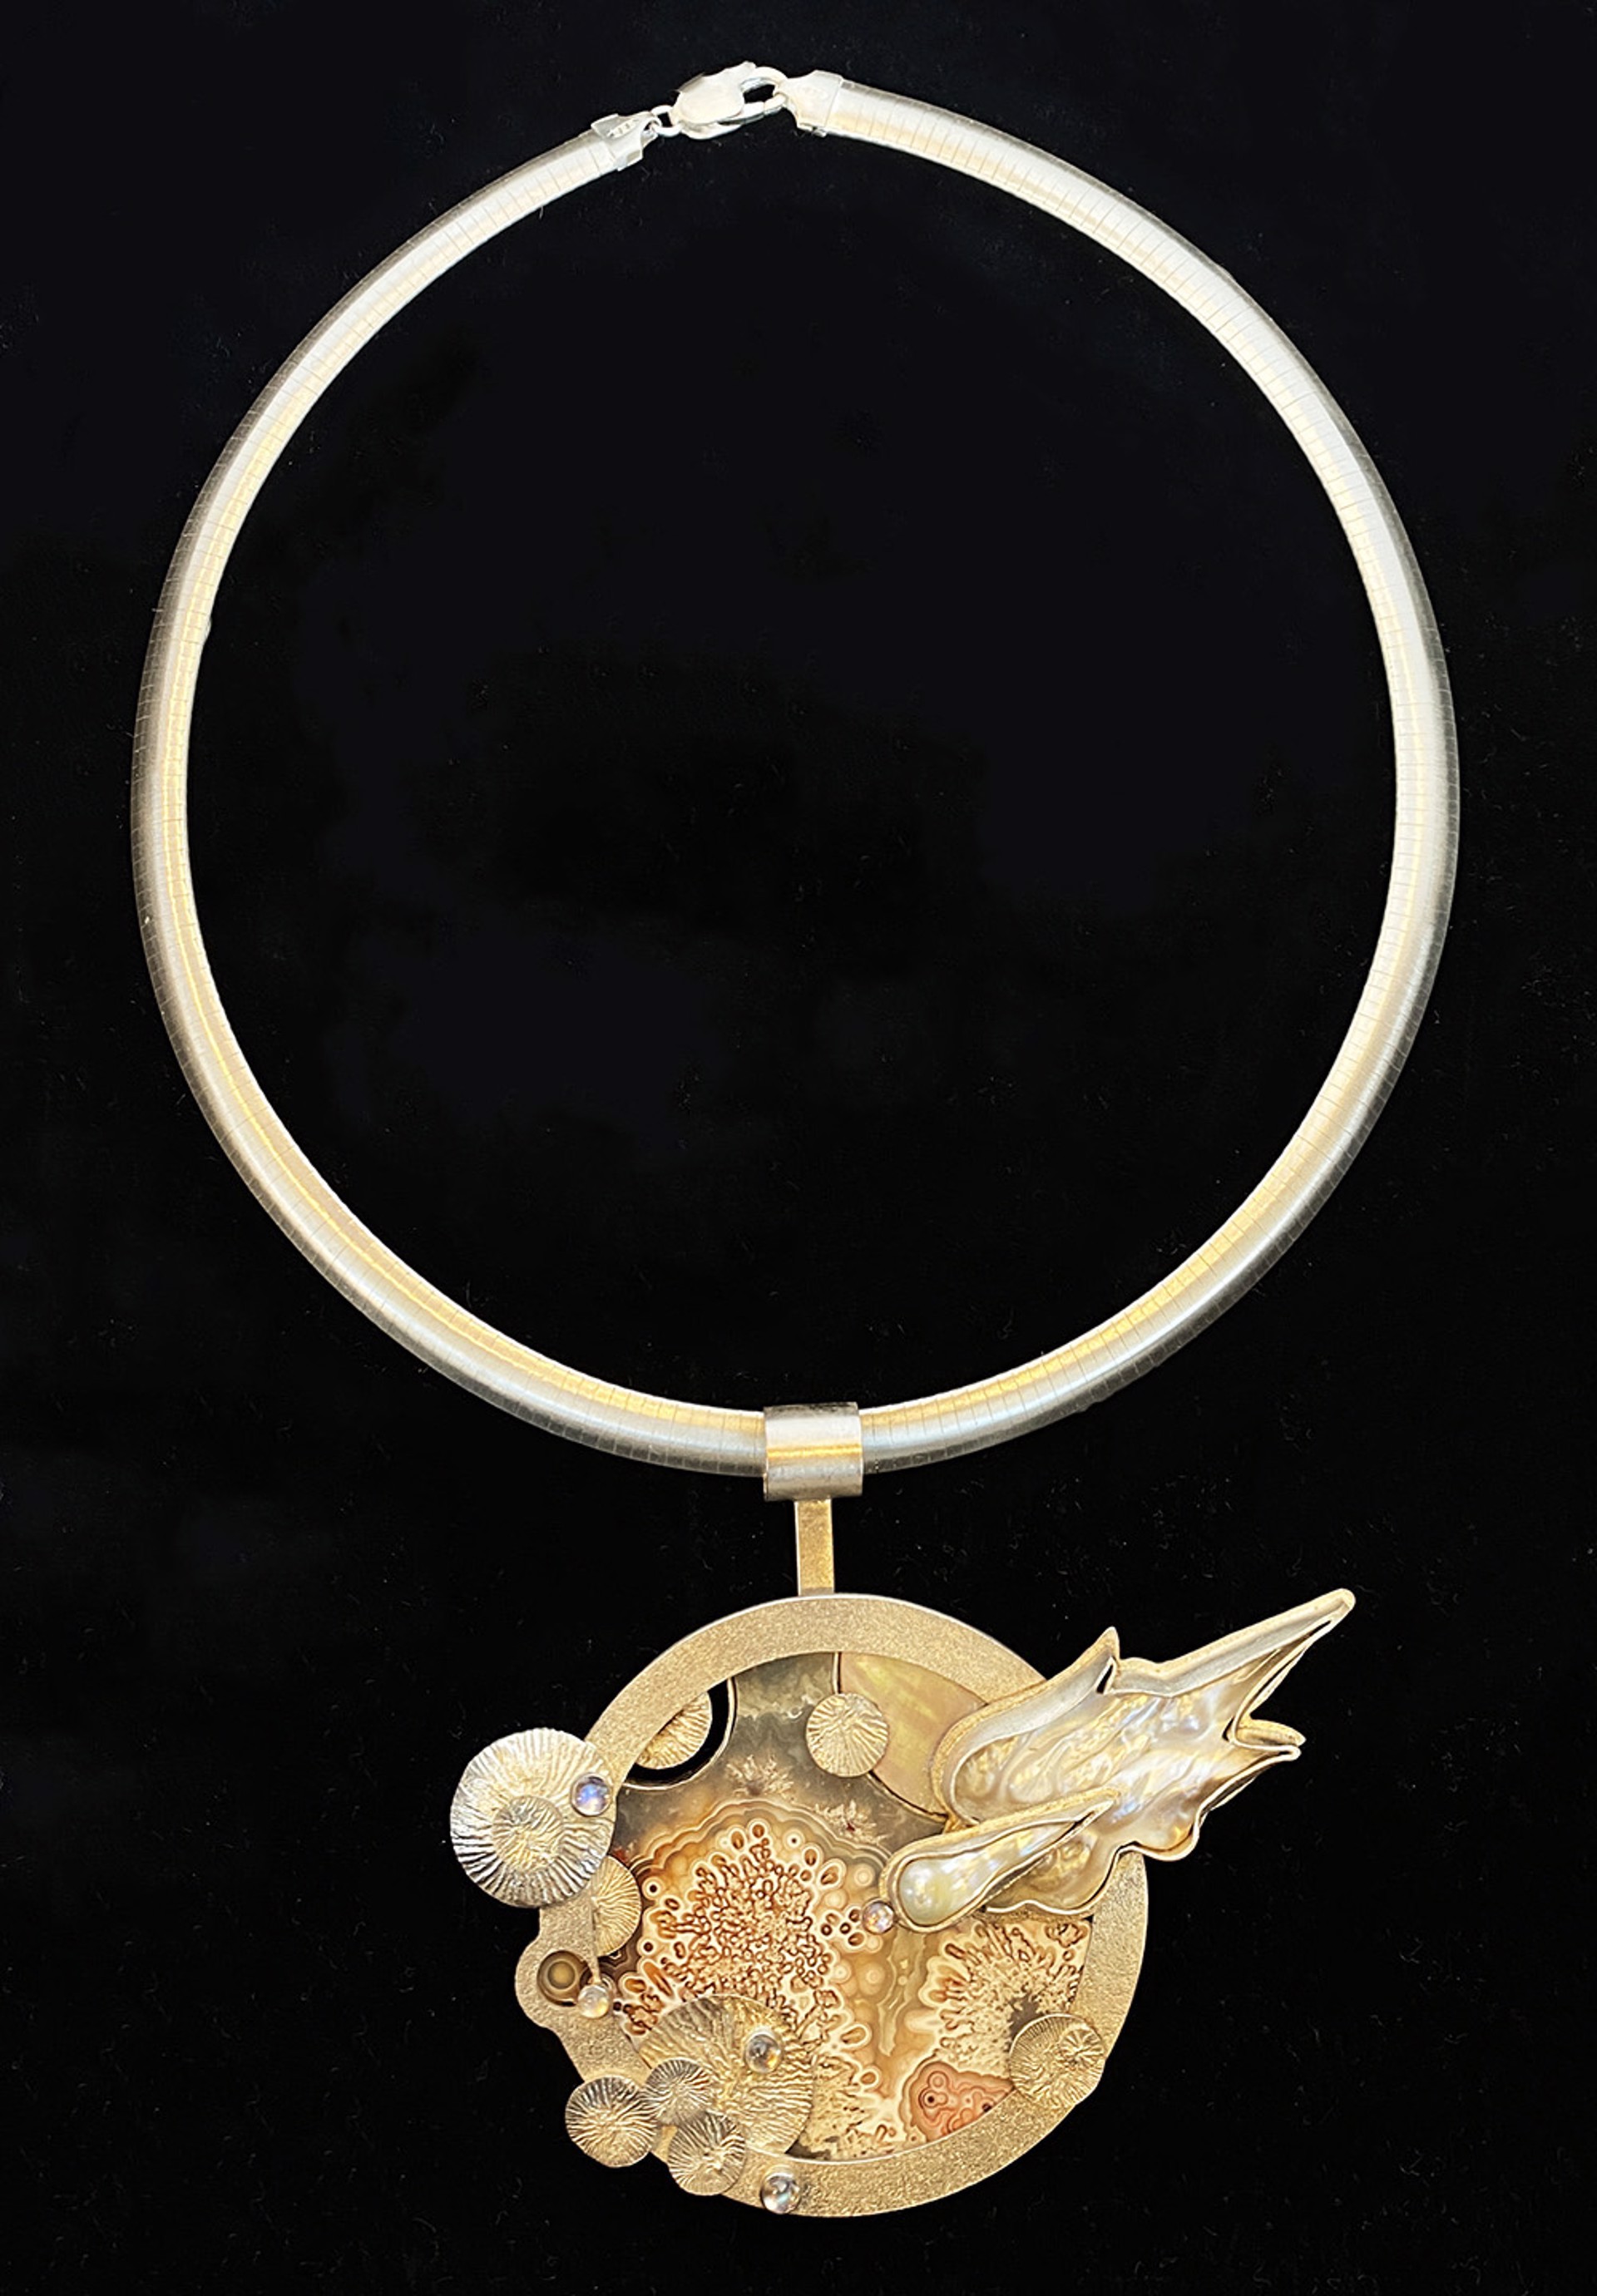 Necklace #4 by Marilynn Nicholson